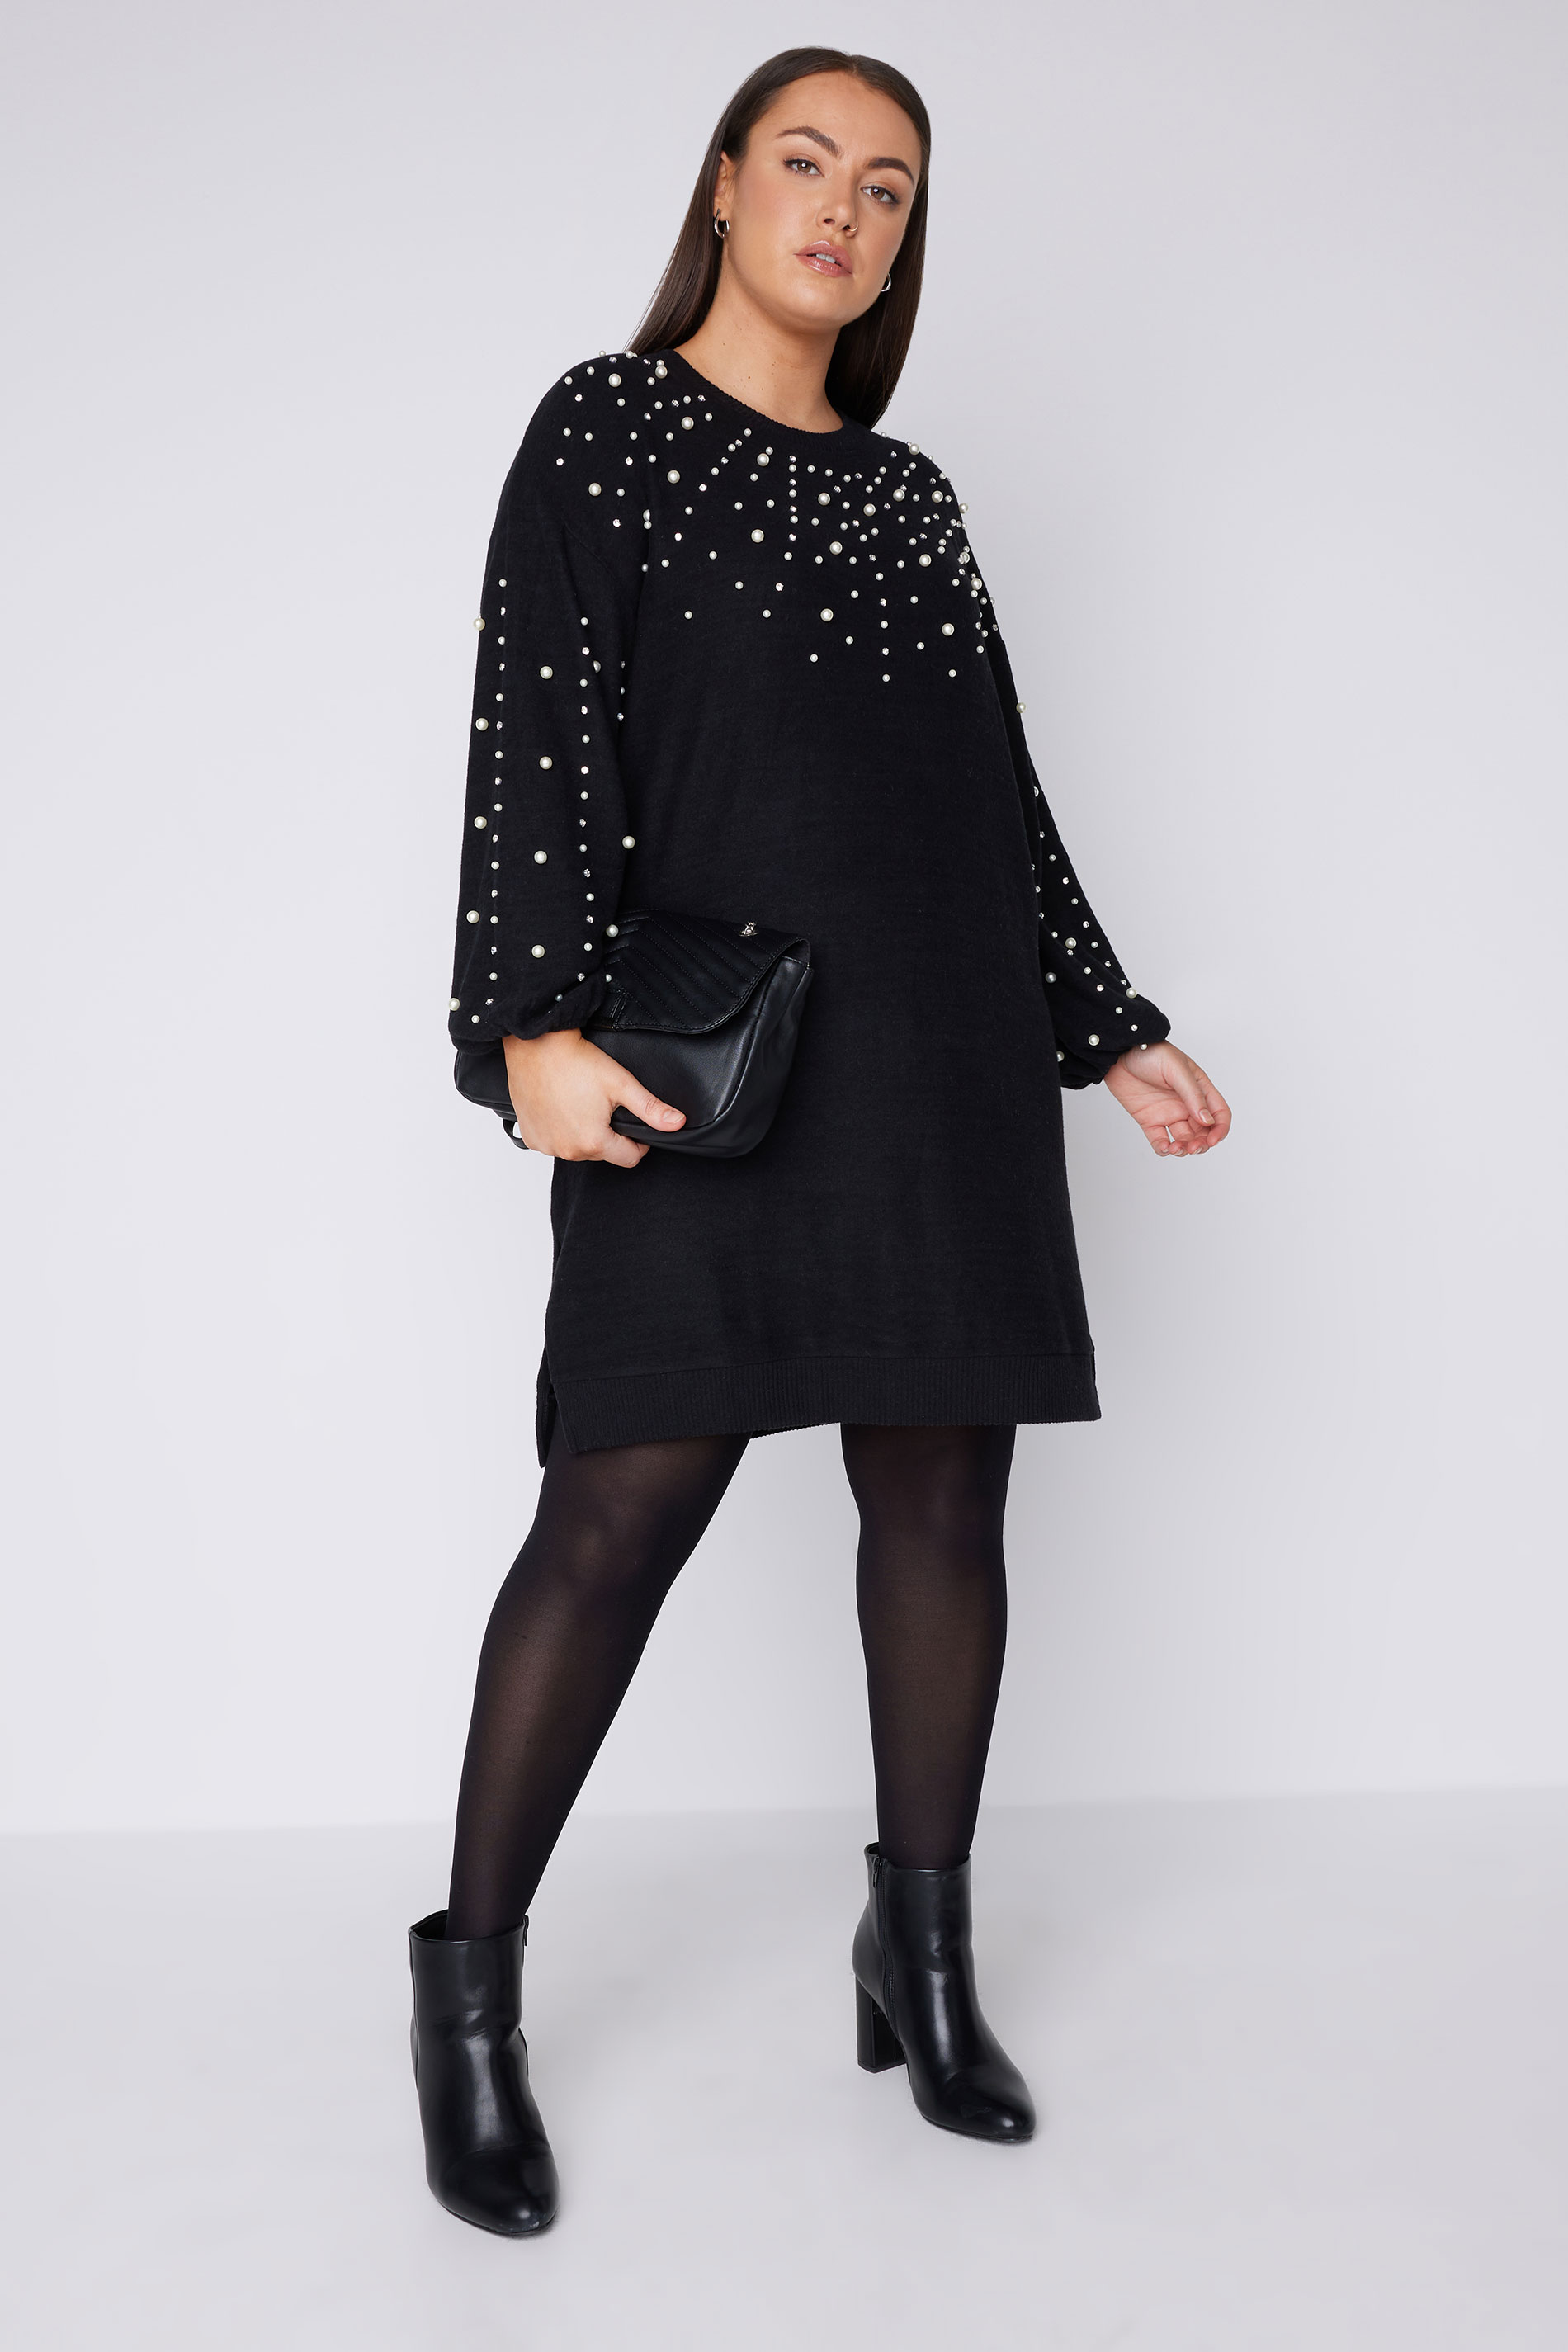 EVANS Plus Size Black Pearl Embellished Jumper Dress | Evans 2